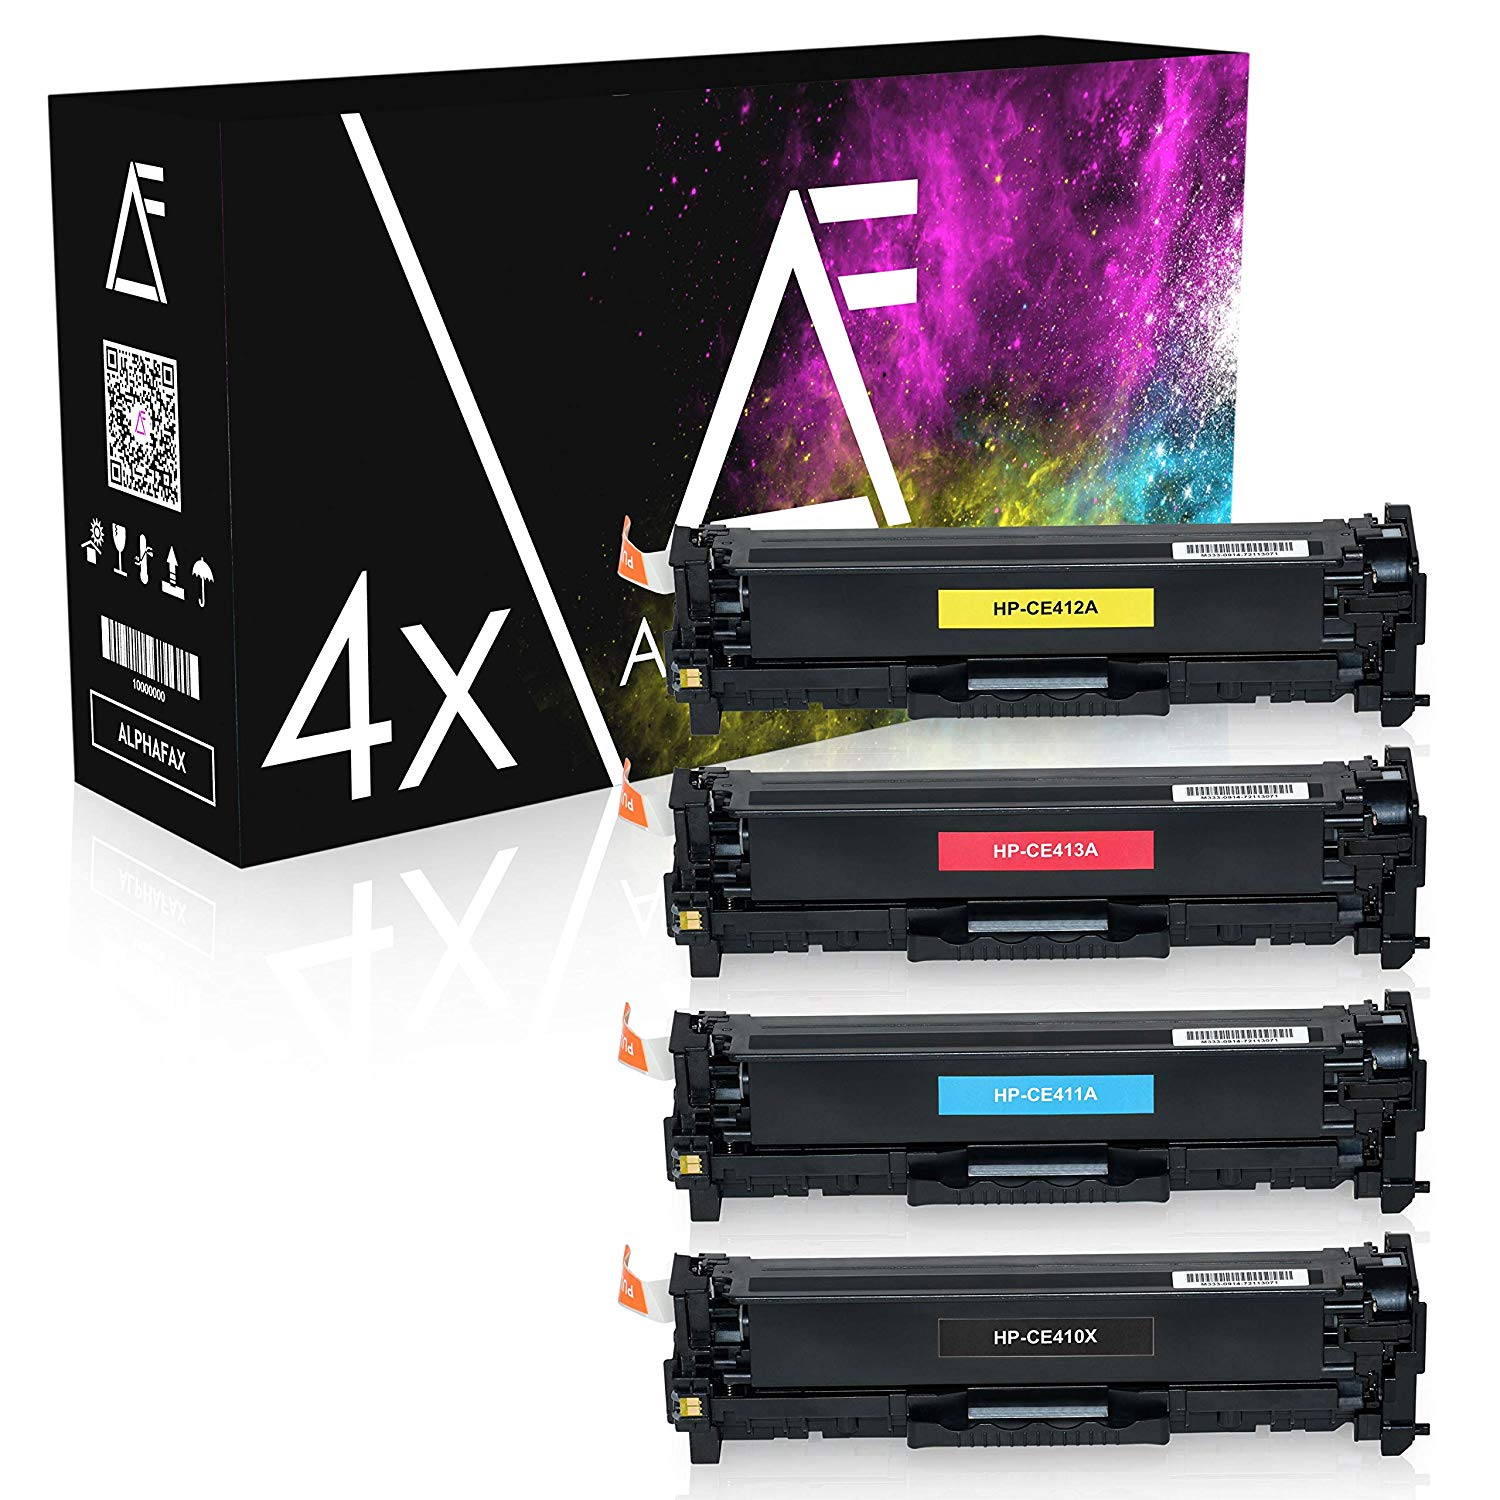 AlphaFax 4 Toner für HP CE410X CE411A-CE413A 1-1-1-1